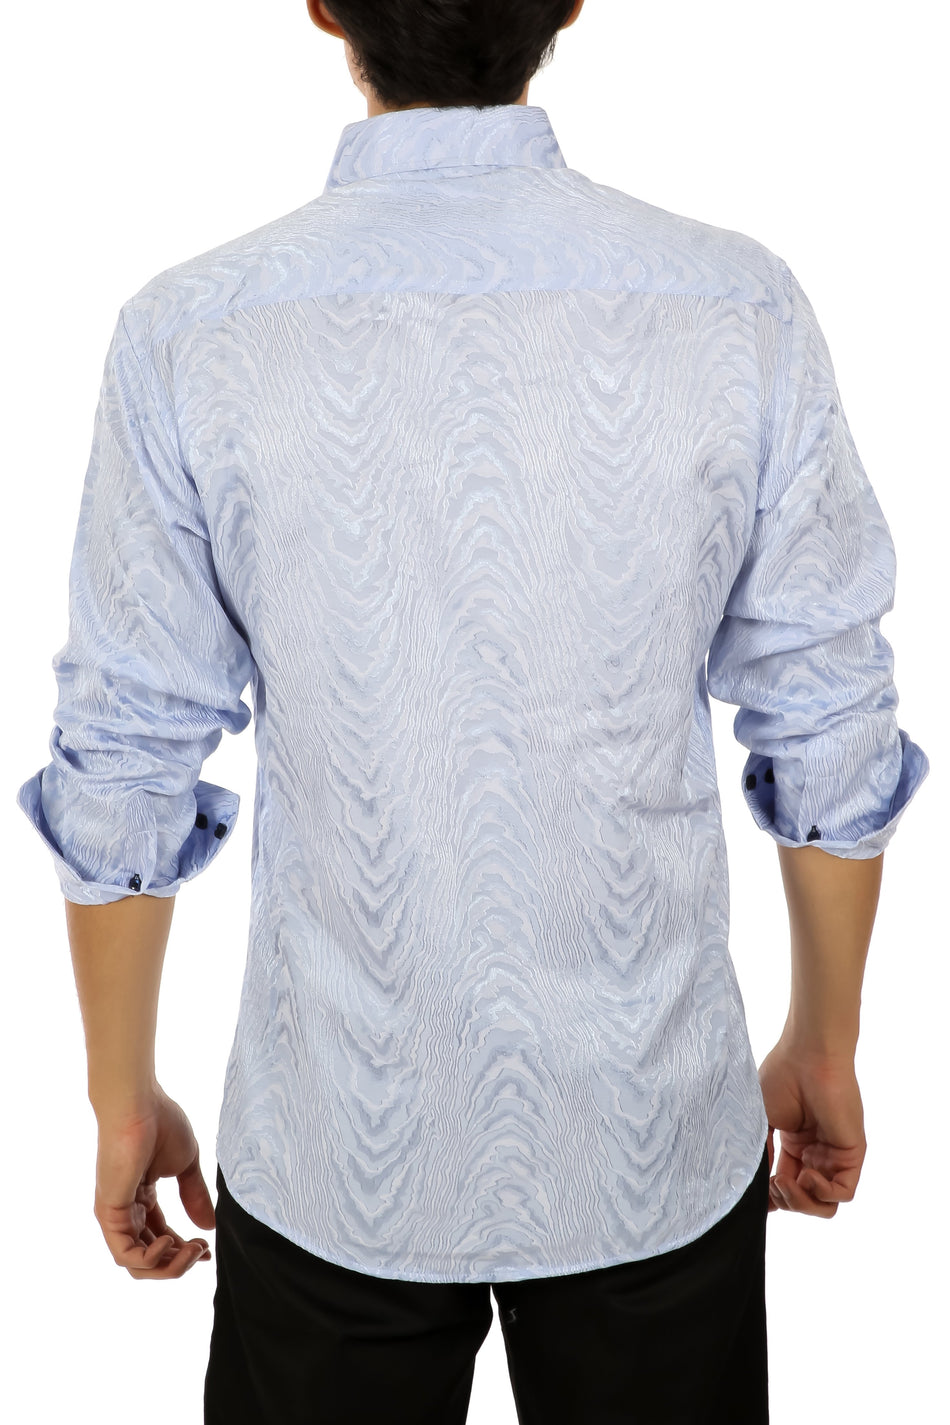 202428 - Men's Blue Button Up Long Sleeve Dress Shirt